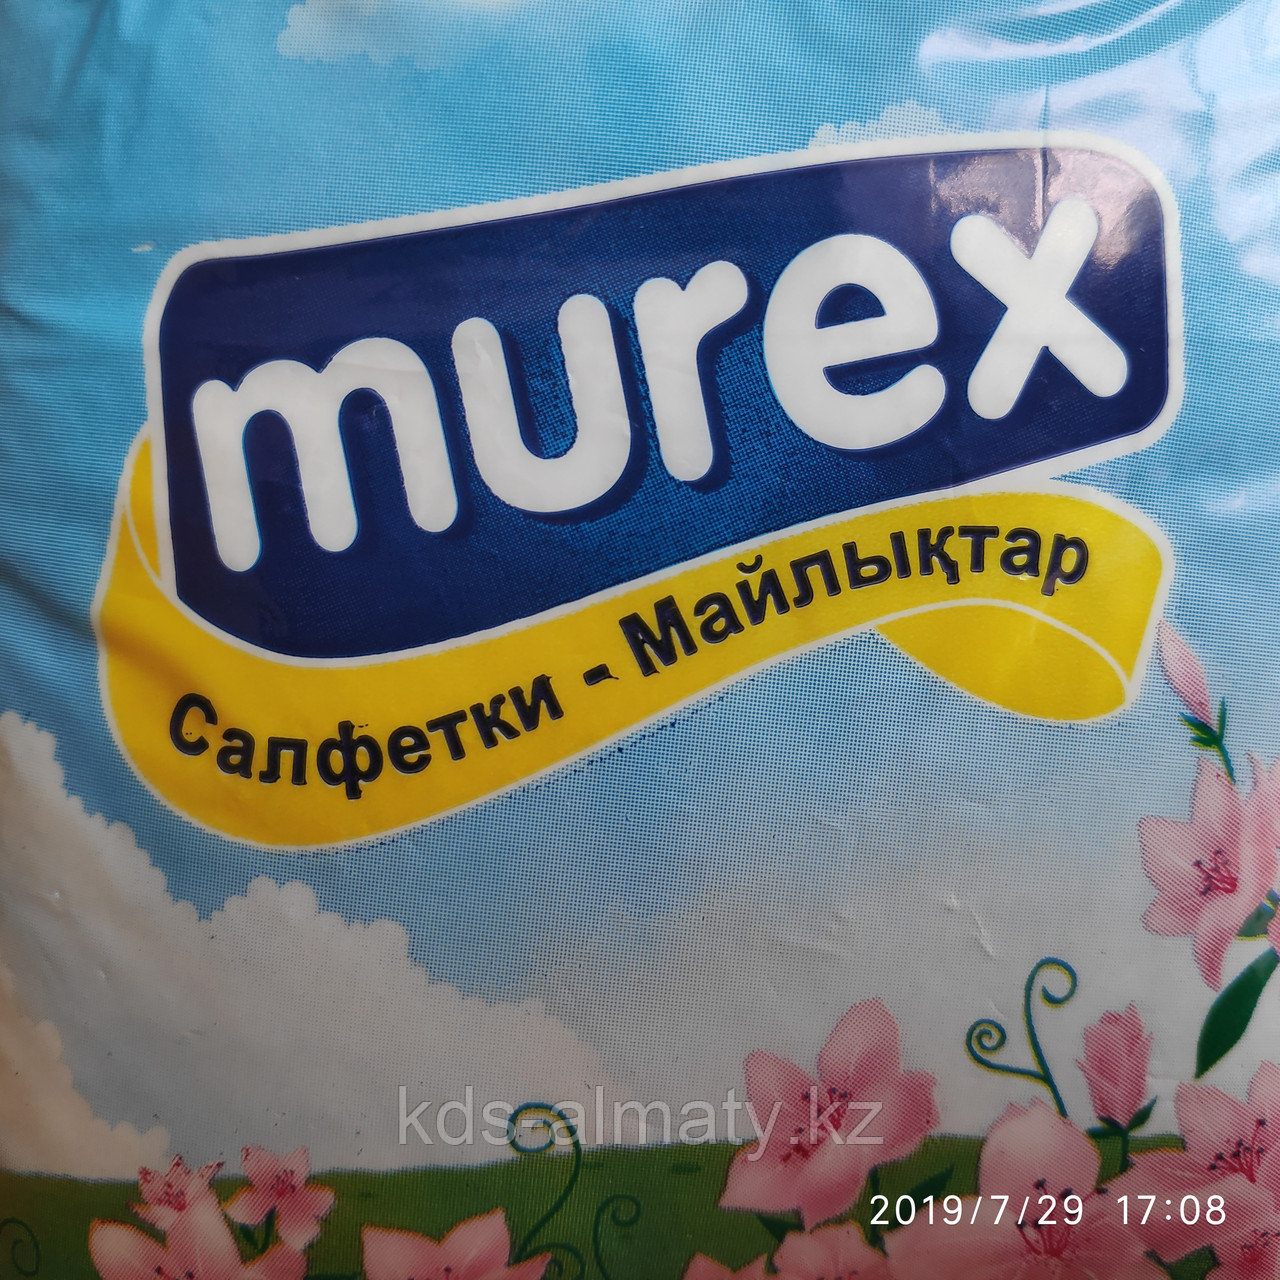 Салфетки настольные бытовые "Murex" Стандарт, 100 листов